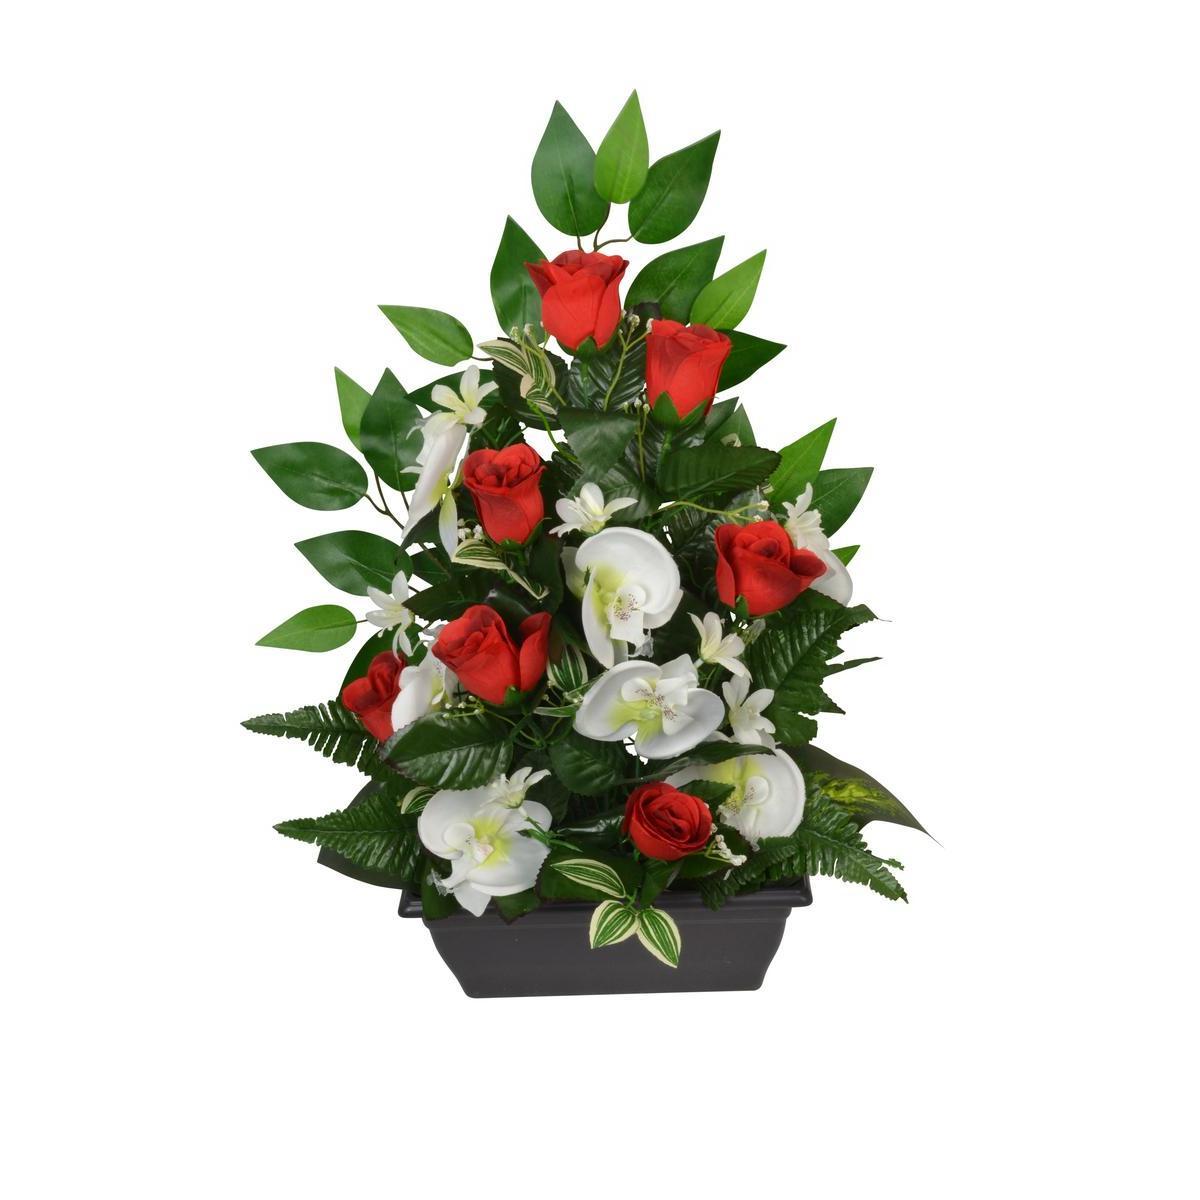 Jardinière de roses, orchidées, mini fleurs et ficus - Plastique et tissus - L 25 x H 53 cm - Différents coloris